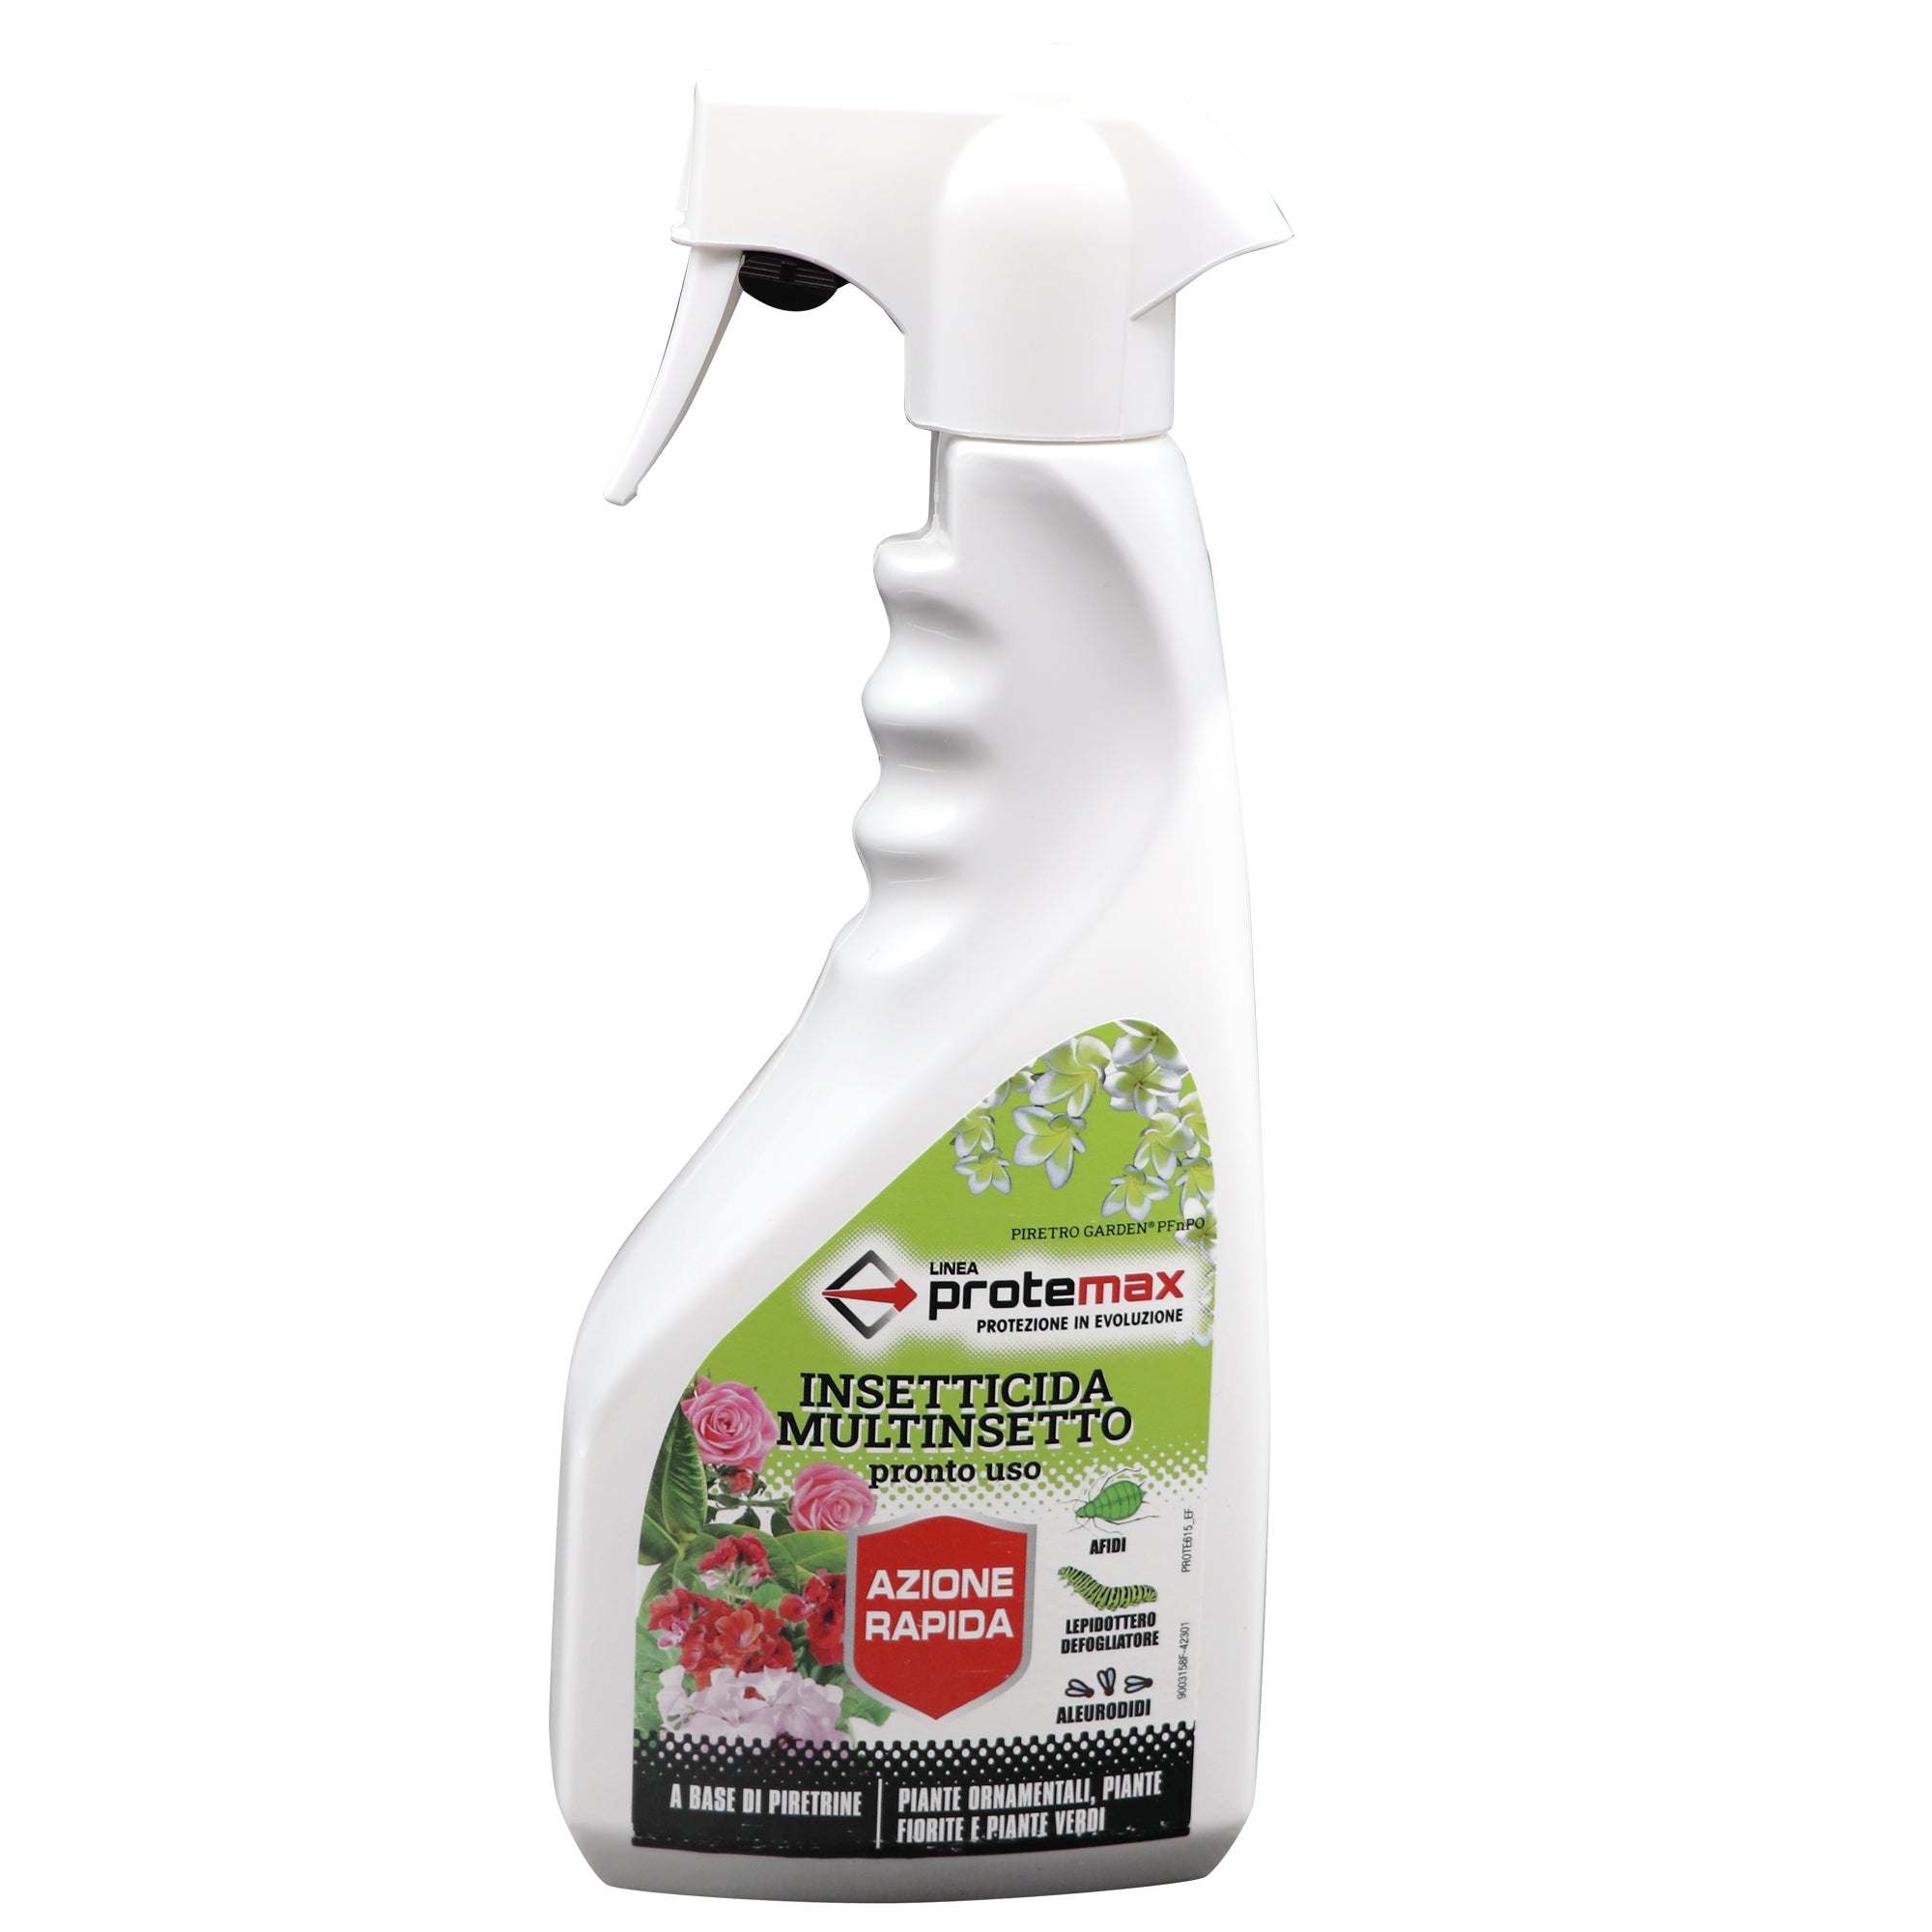 protemax-insetticida-aficida-multinsettto-pronto-uso-pfnpo-spray-no-gas-500ml